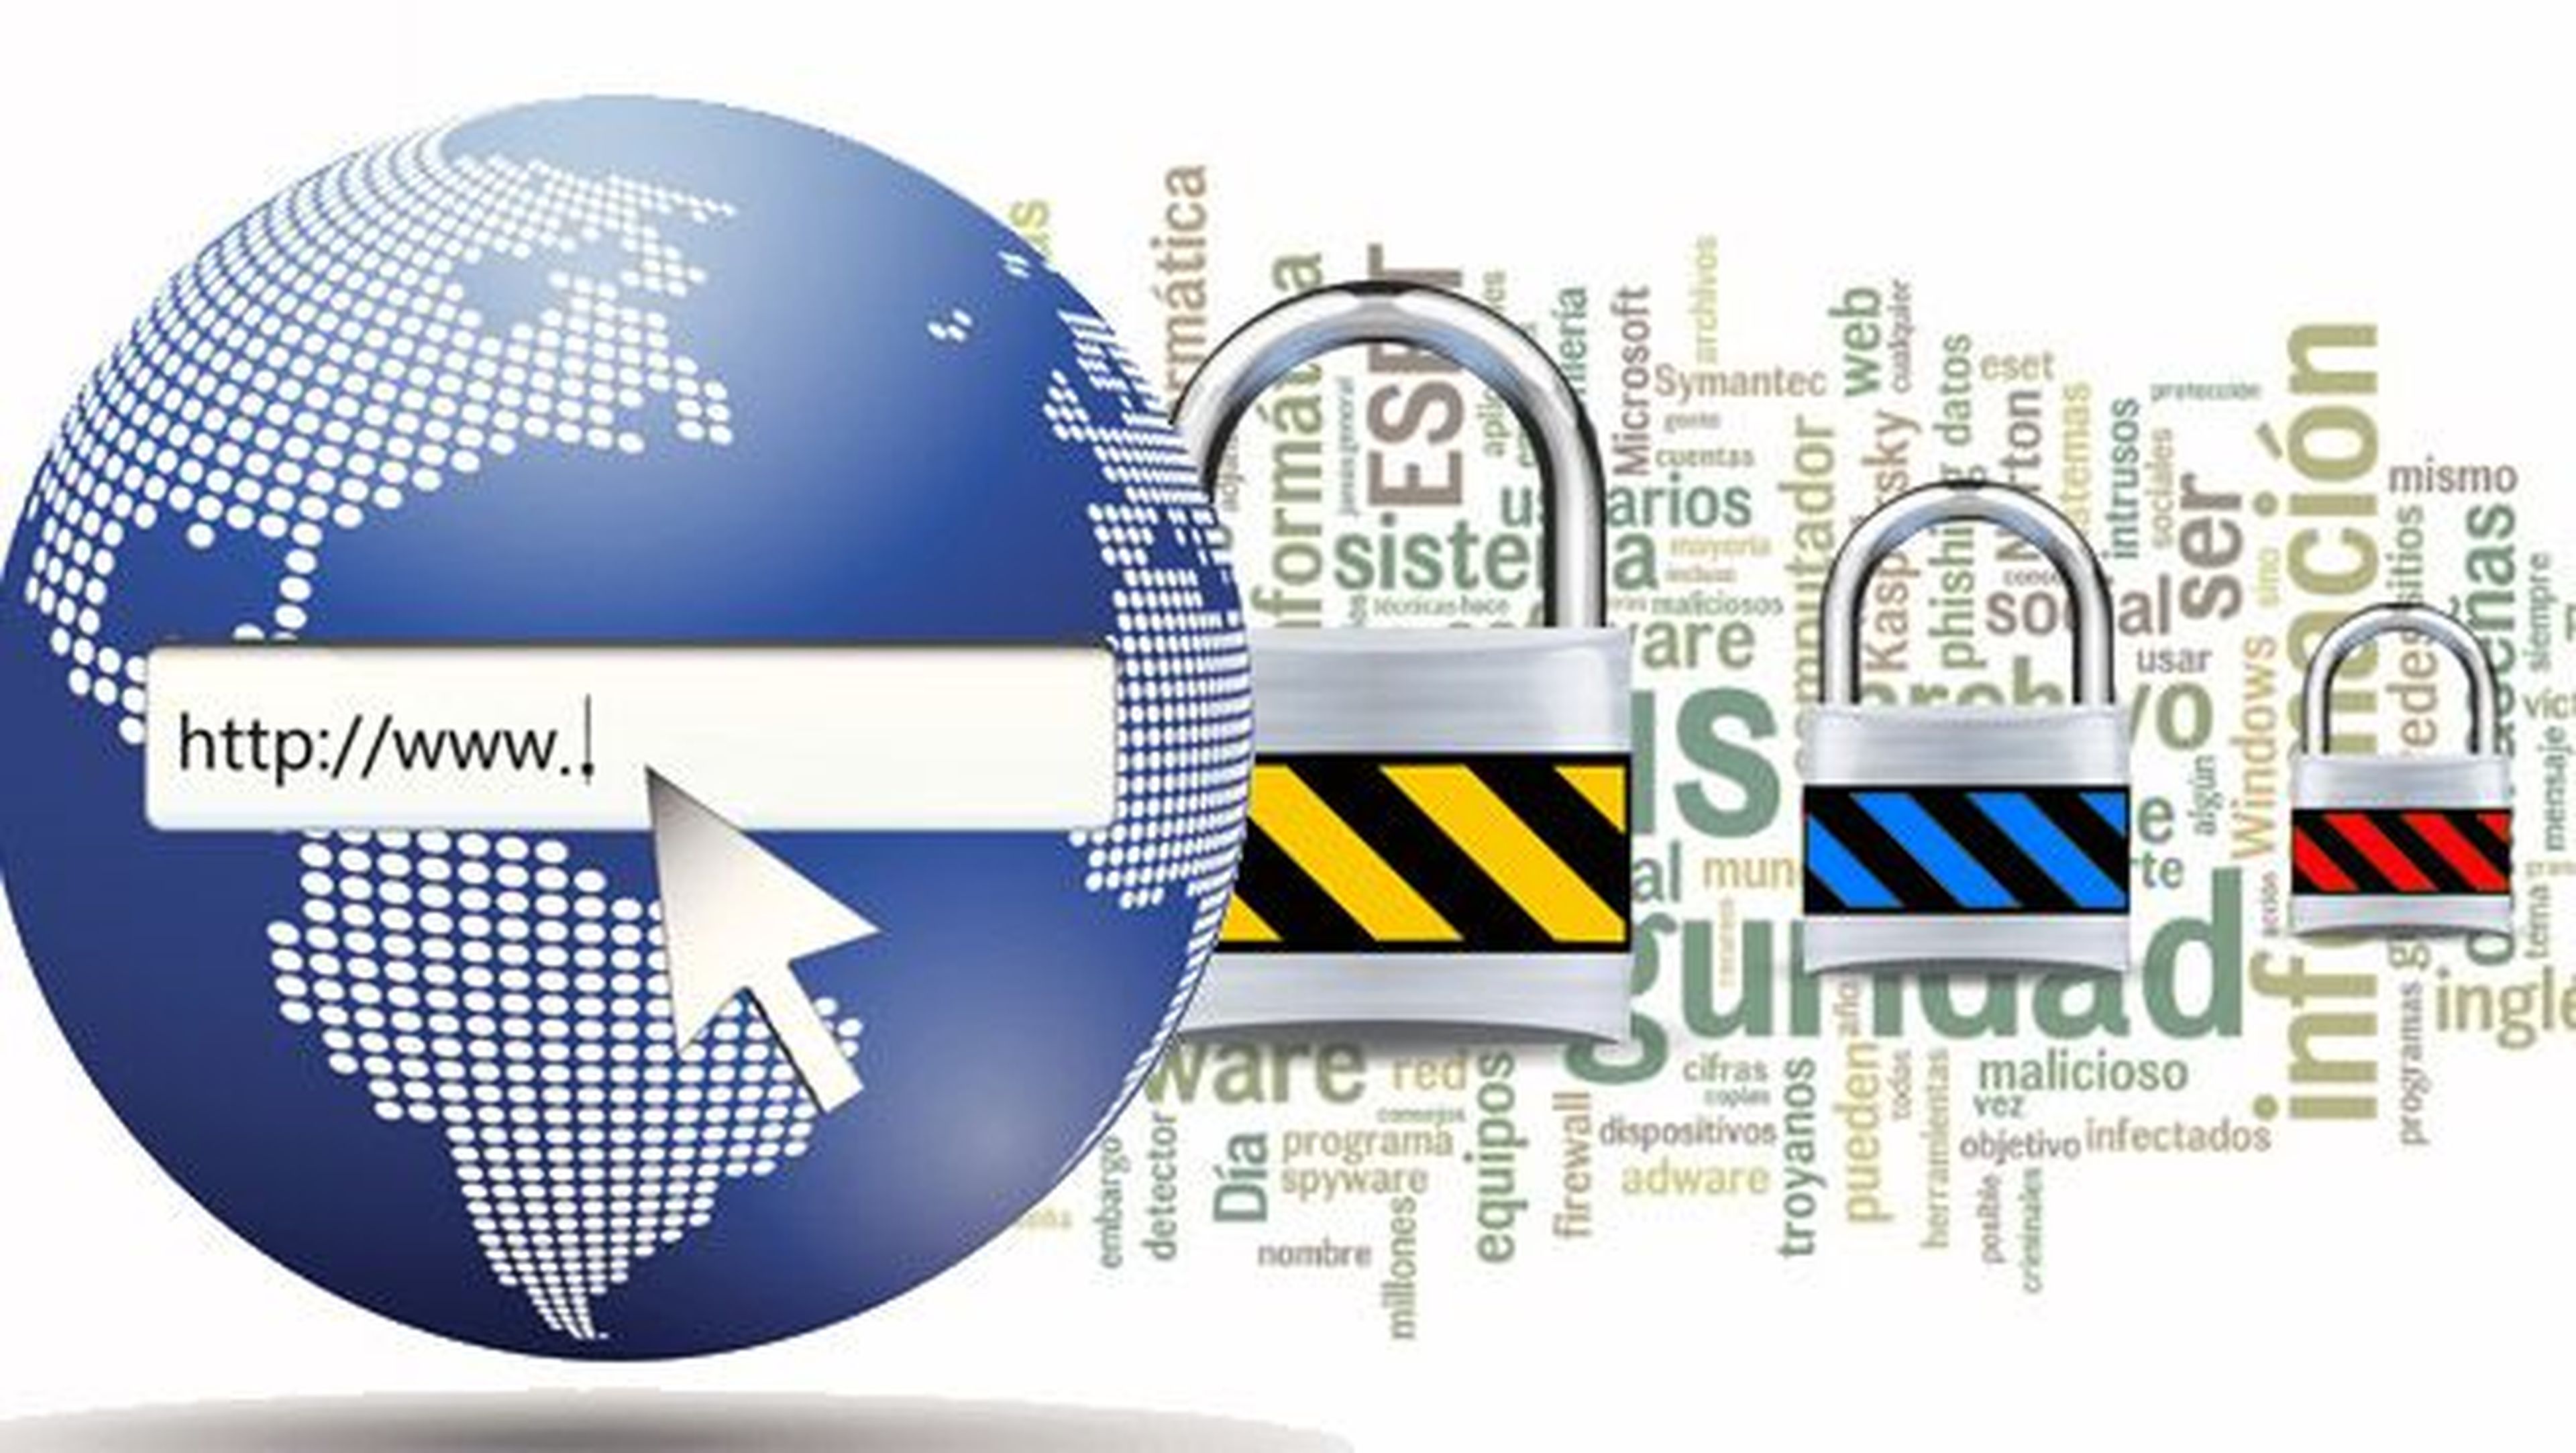 Día de Internet seguro: Consejos para navegar sin sorpresas